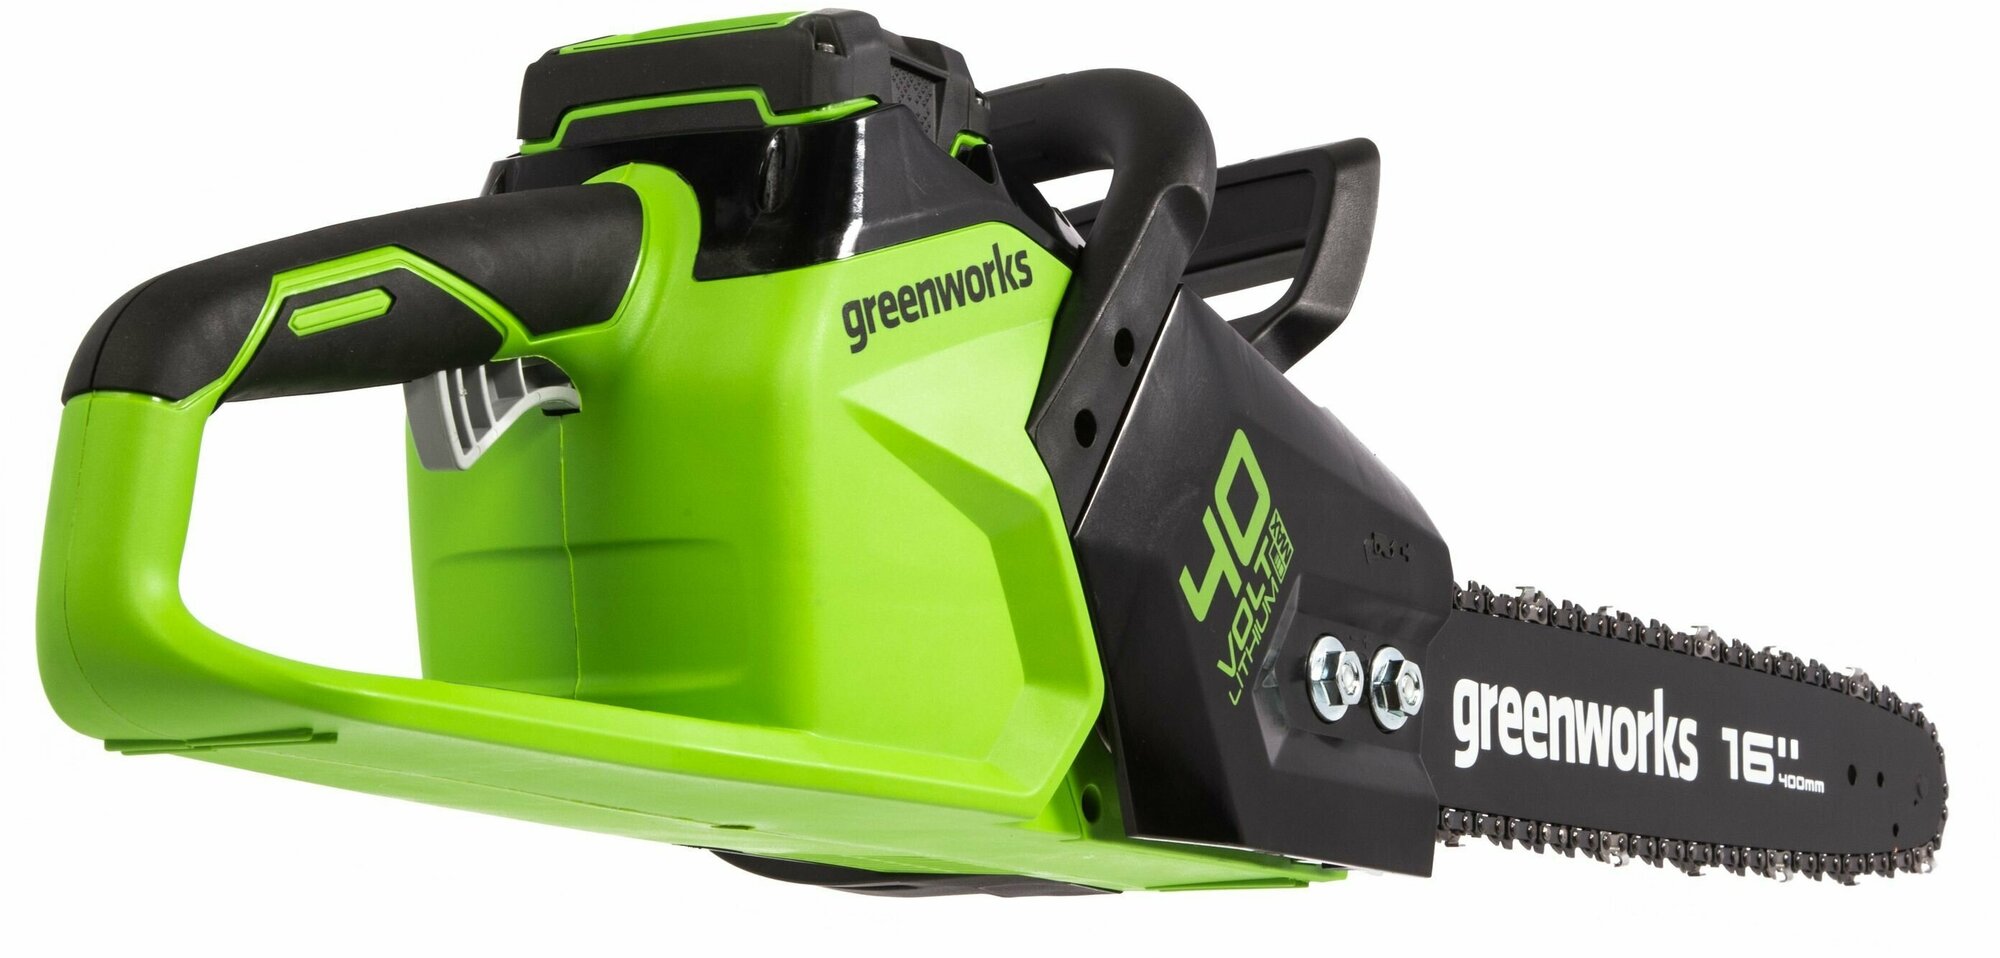 Цепная пила аккумуляторная GreenWorks GD40CS18, 40V, 40 см, бесщеточная, до 1,8 КВТ, без АКБ и ЗУ